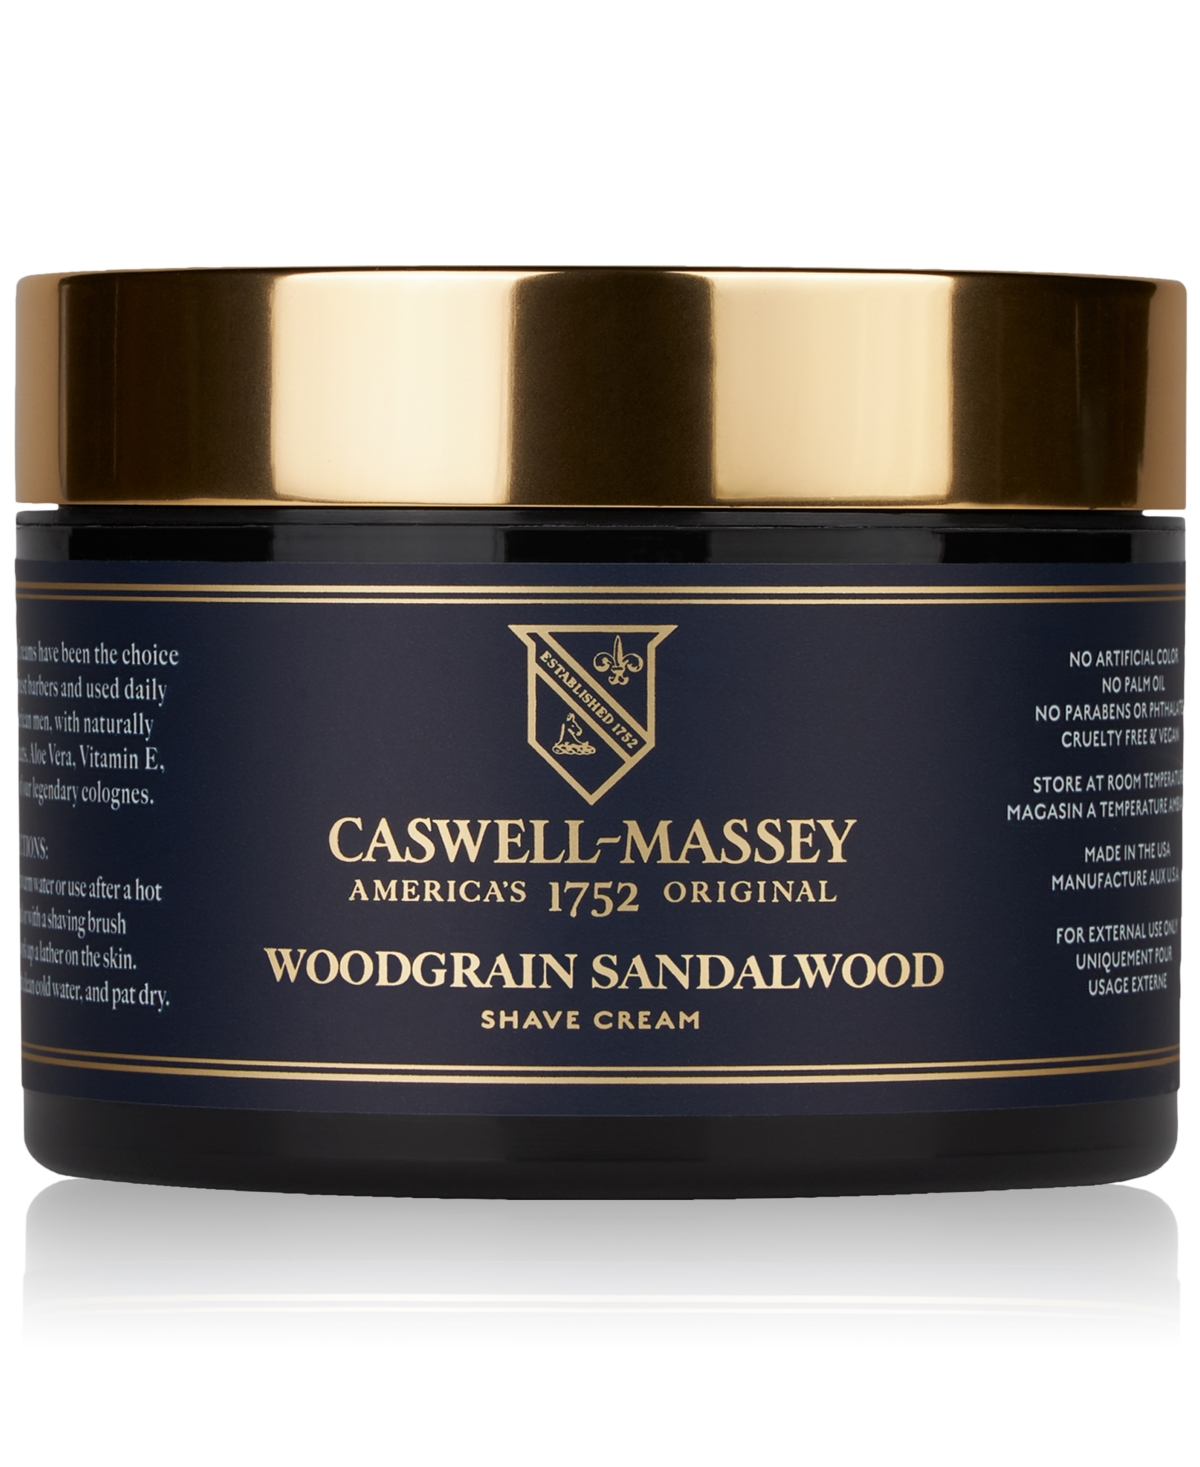 Heritage Woodgrain Sandalwood Shave Cream, 8-oz.